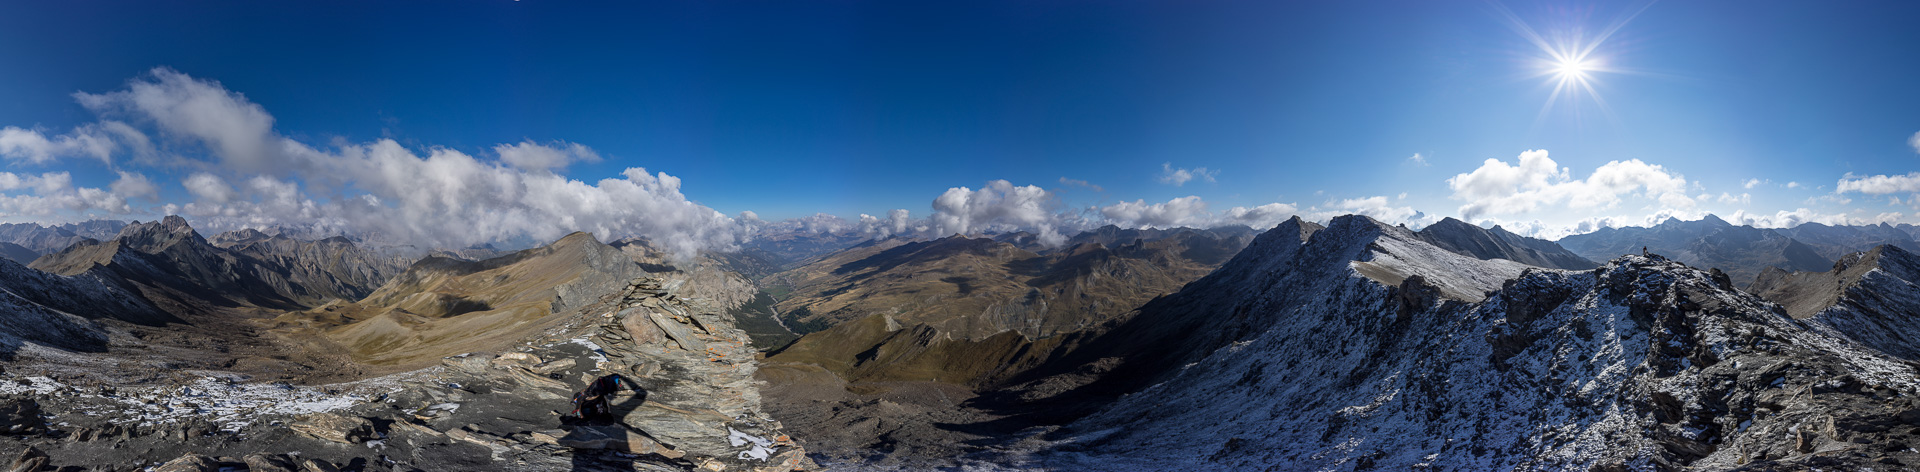 Gipfelpanorama - noch ist der Monte Viso zu sehen.